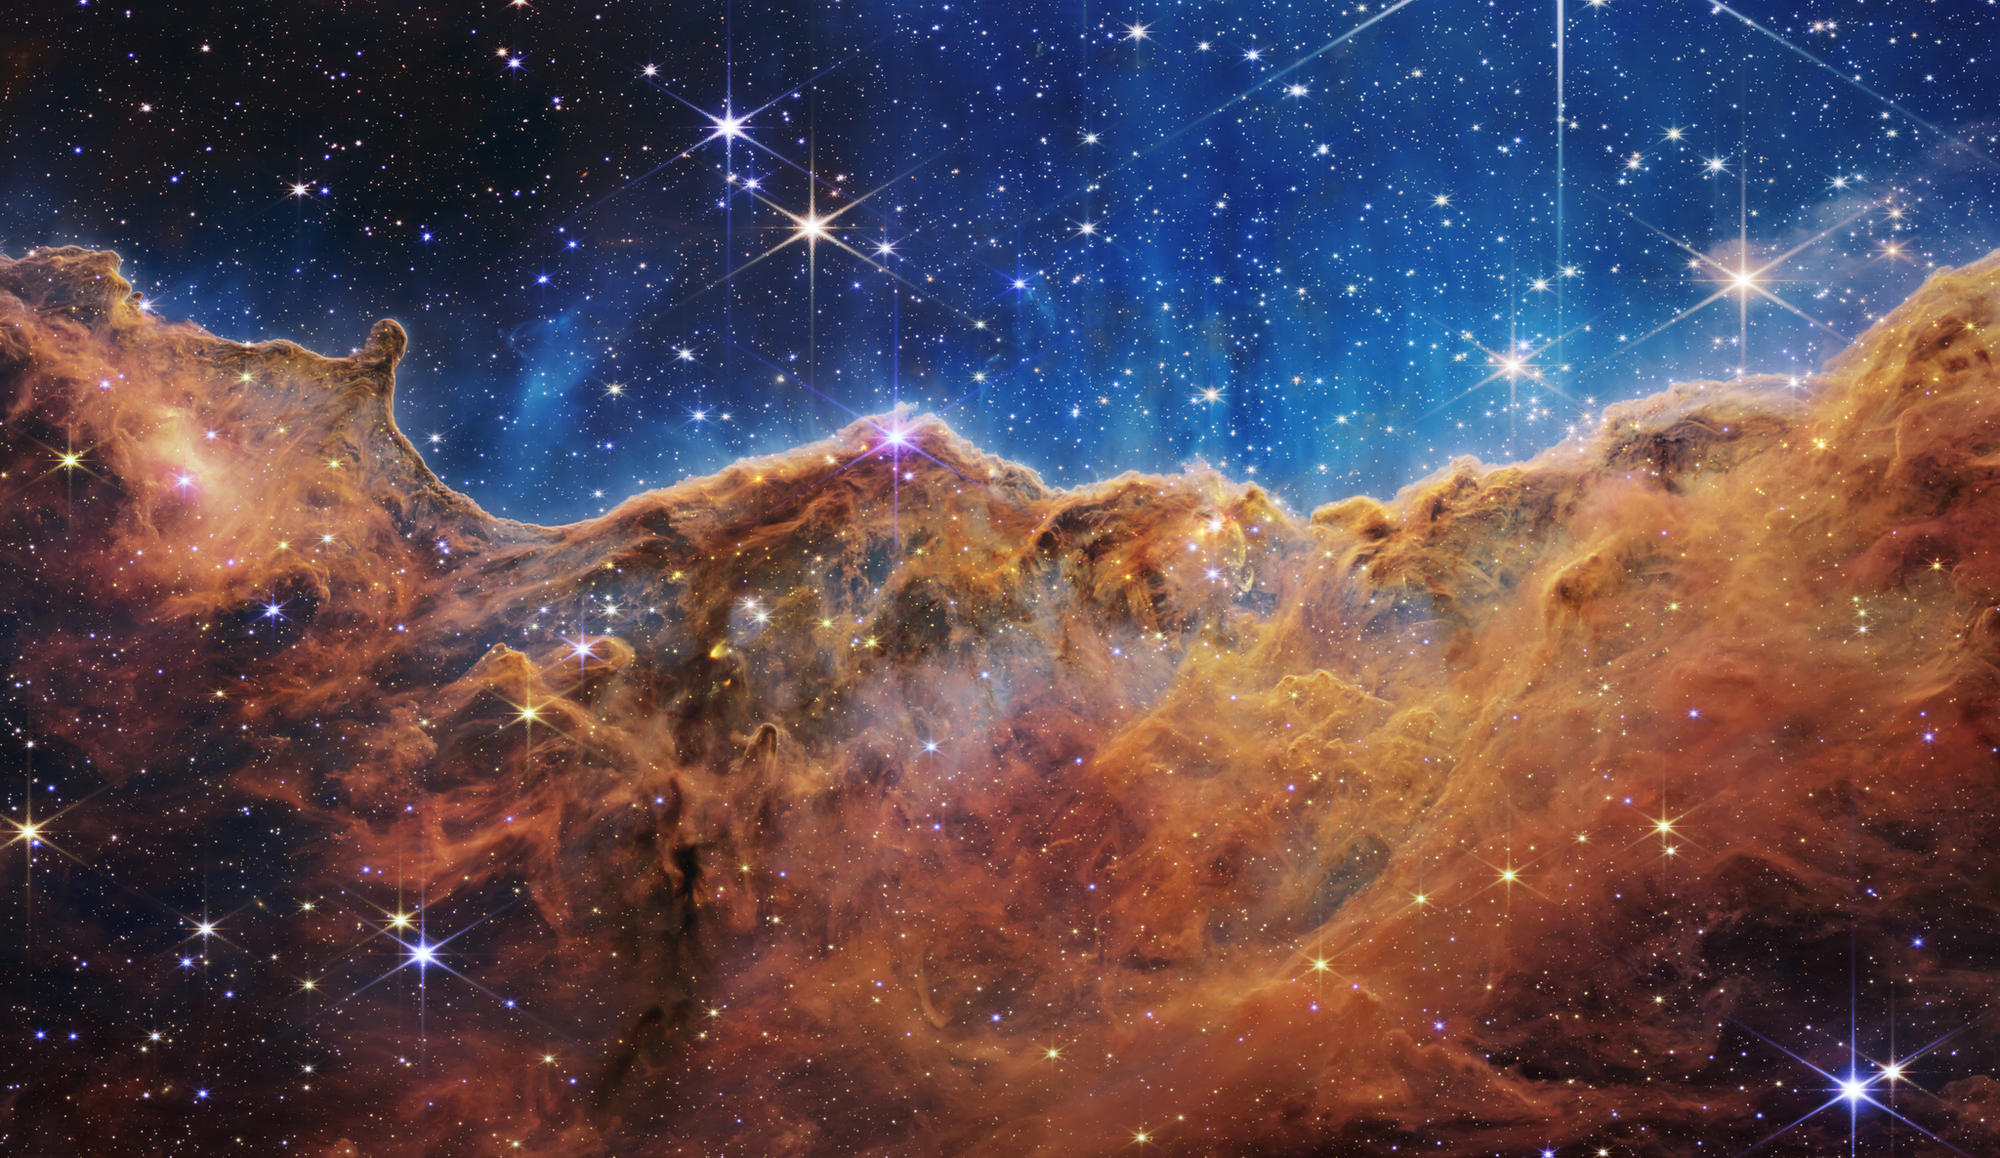 Vũ trụ thuở hồng hoang qua Kính thiên văn James Webb